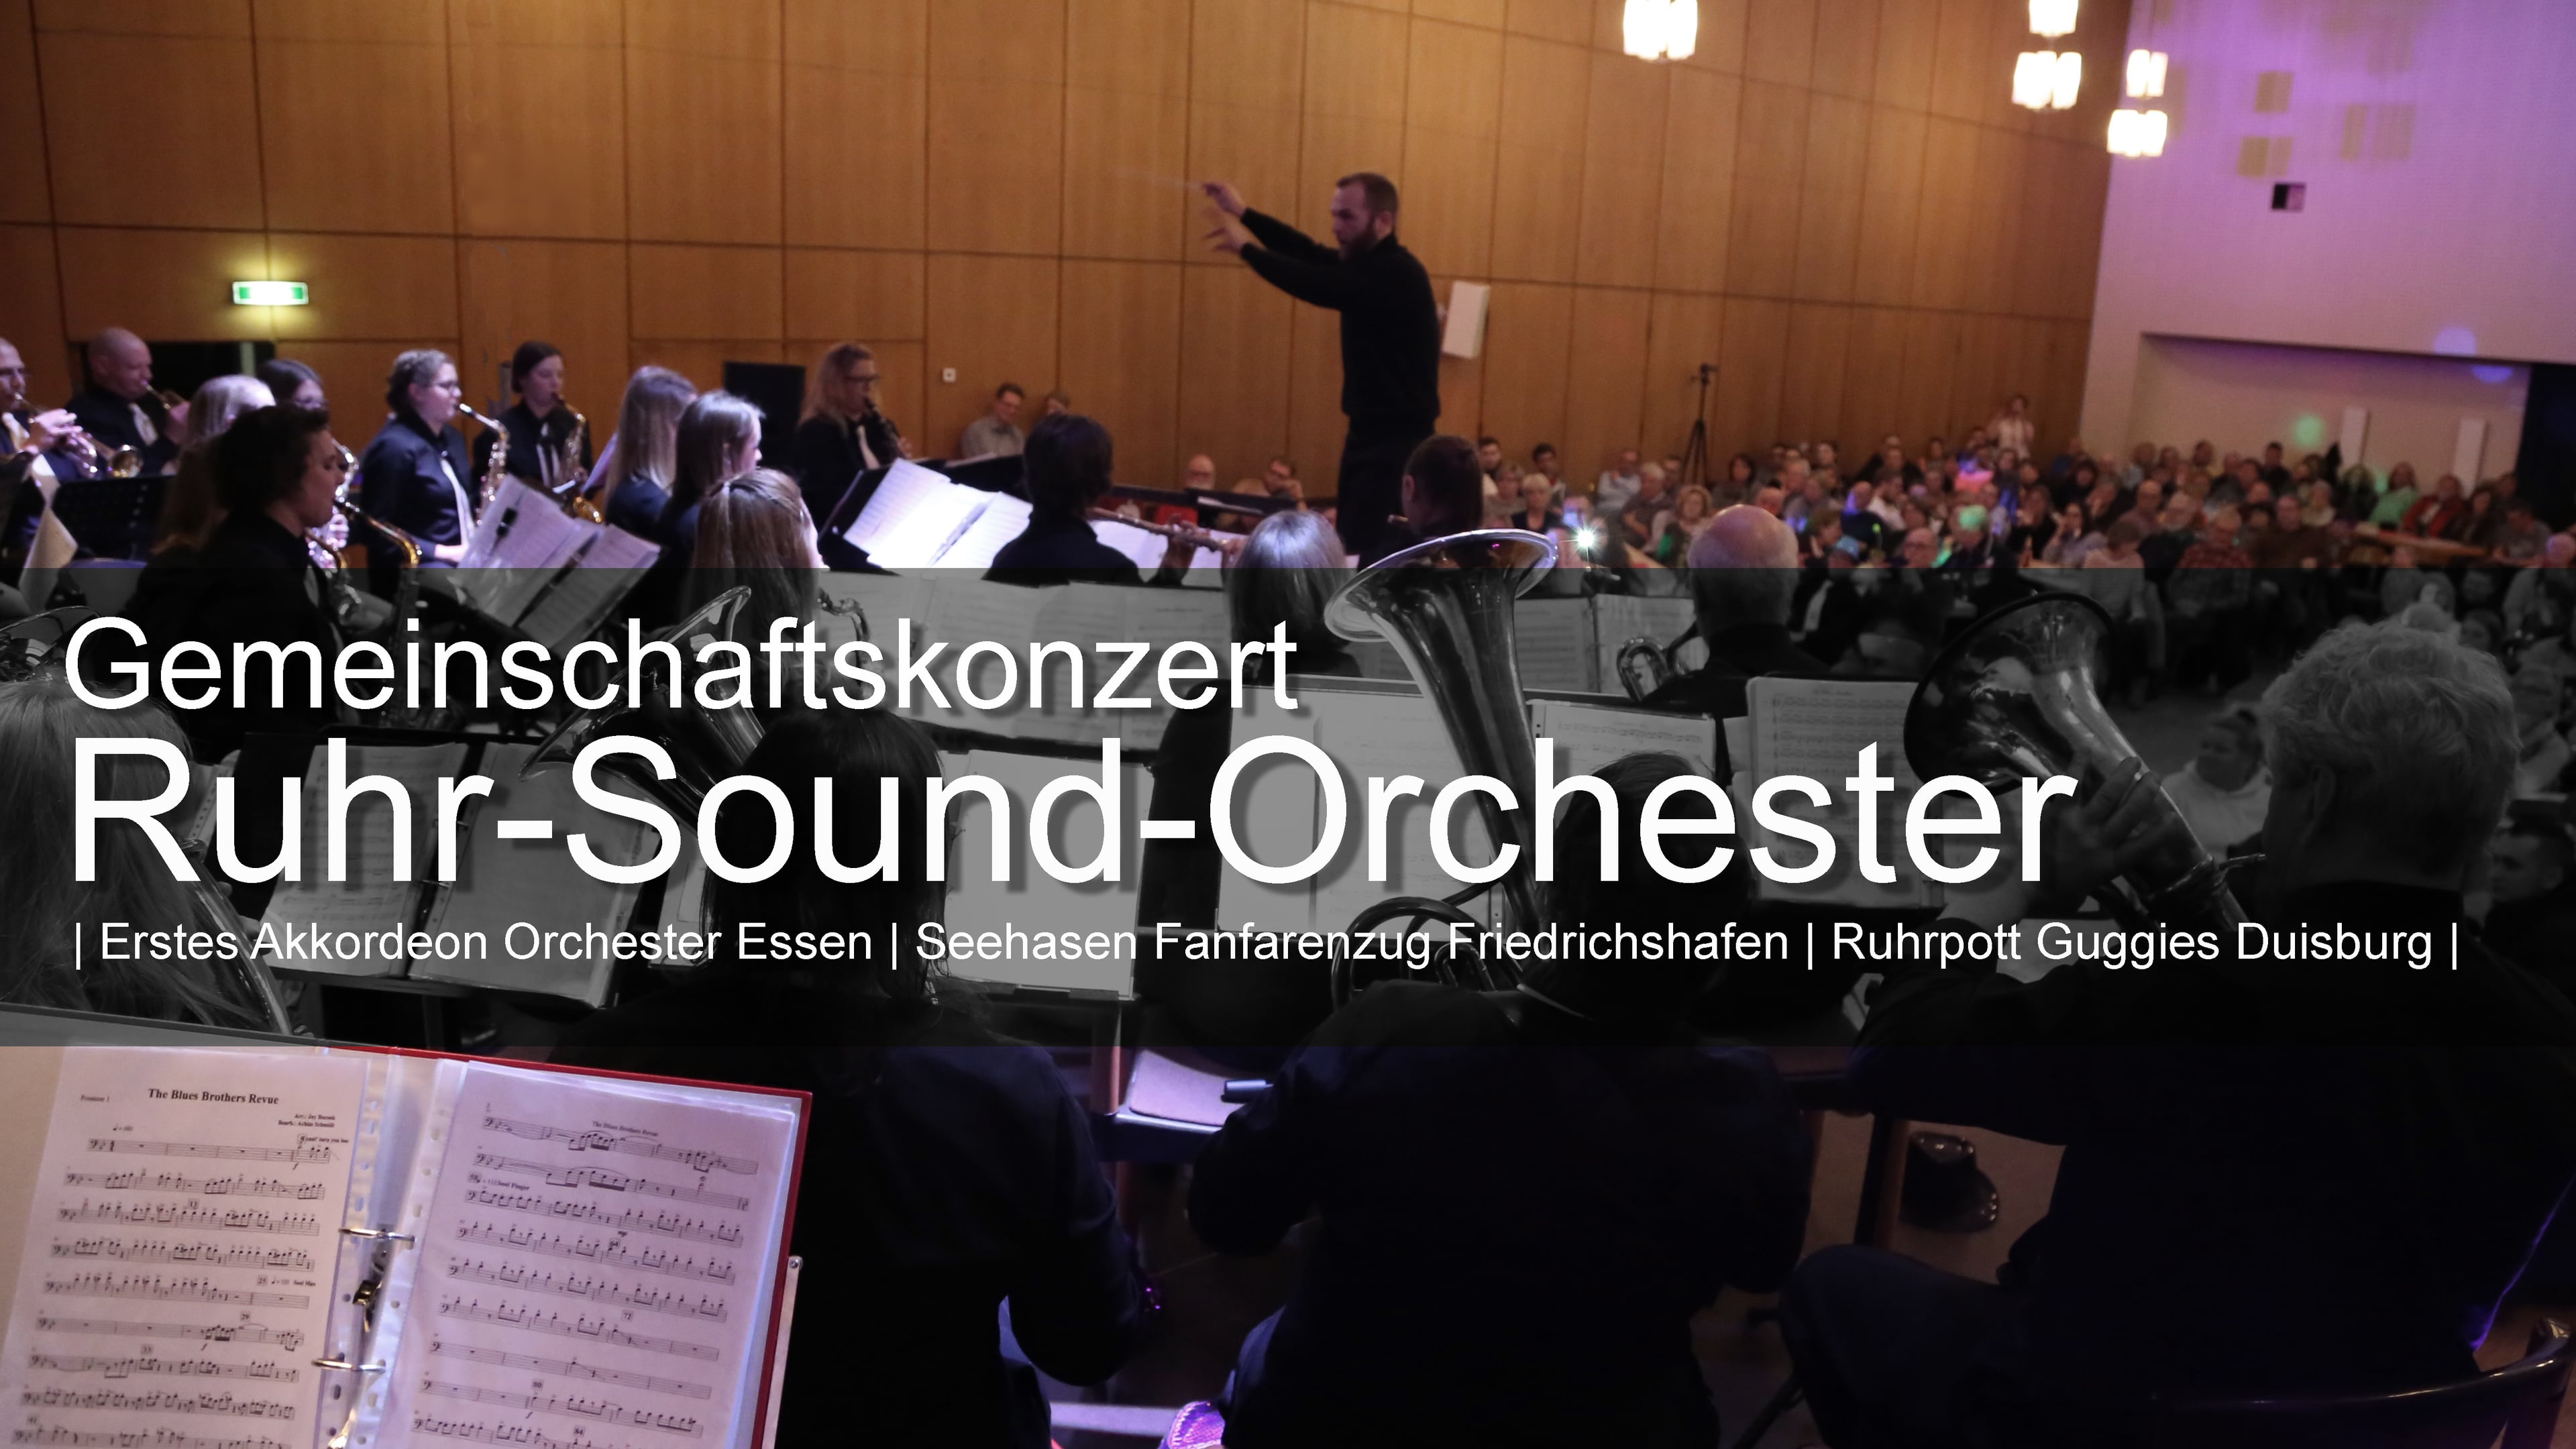 Gemeinschaftskonzert Ruhr-Sound-Orchester Essen on Vimeo